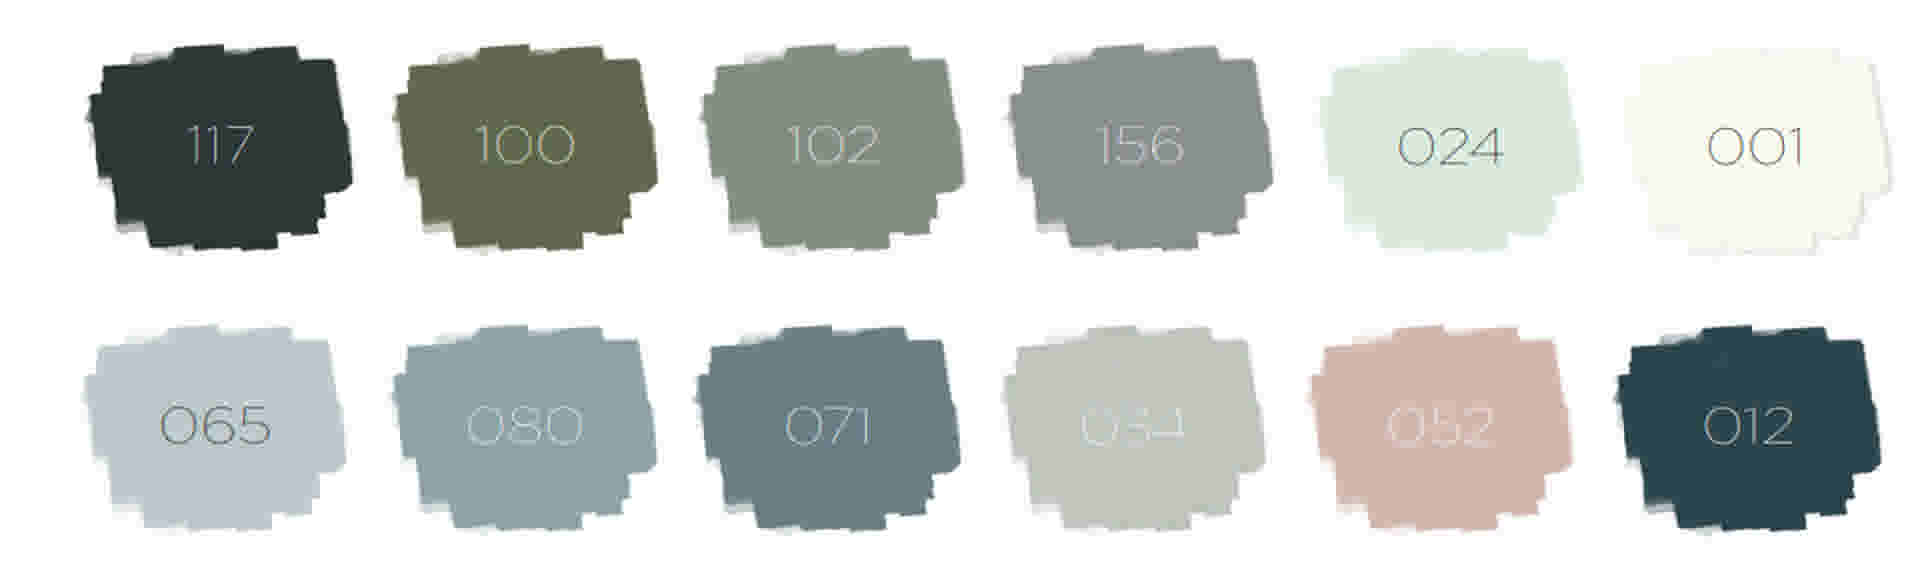 Kleurentesters 100ml in 12 populaire kleuren